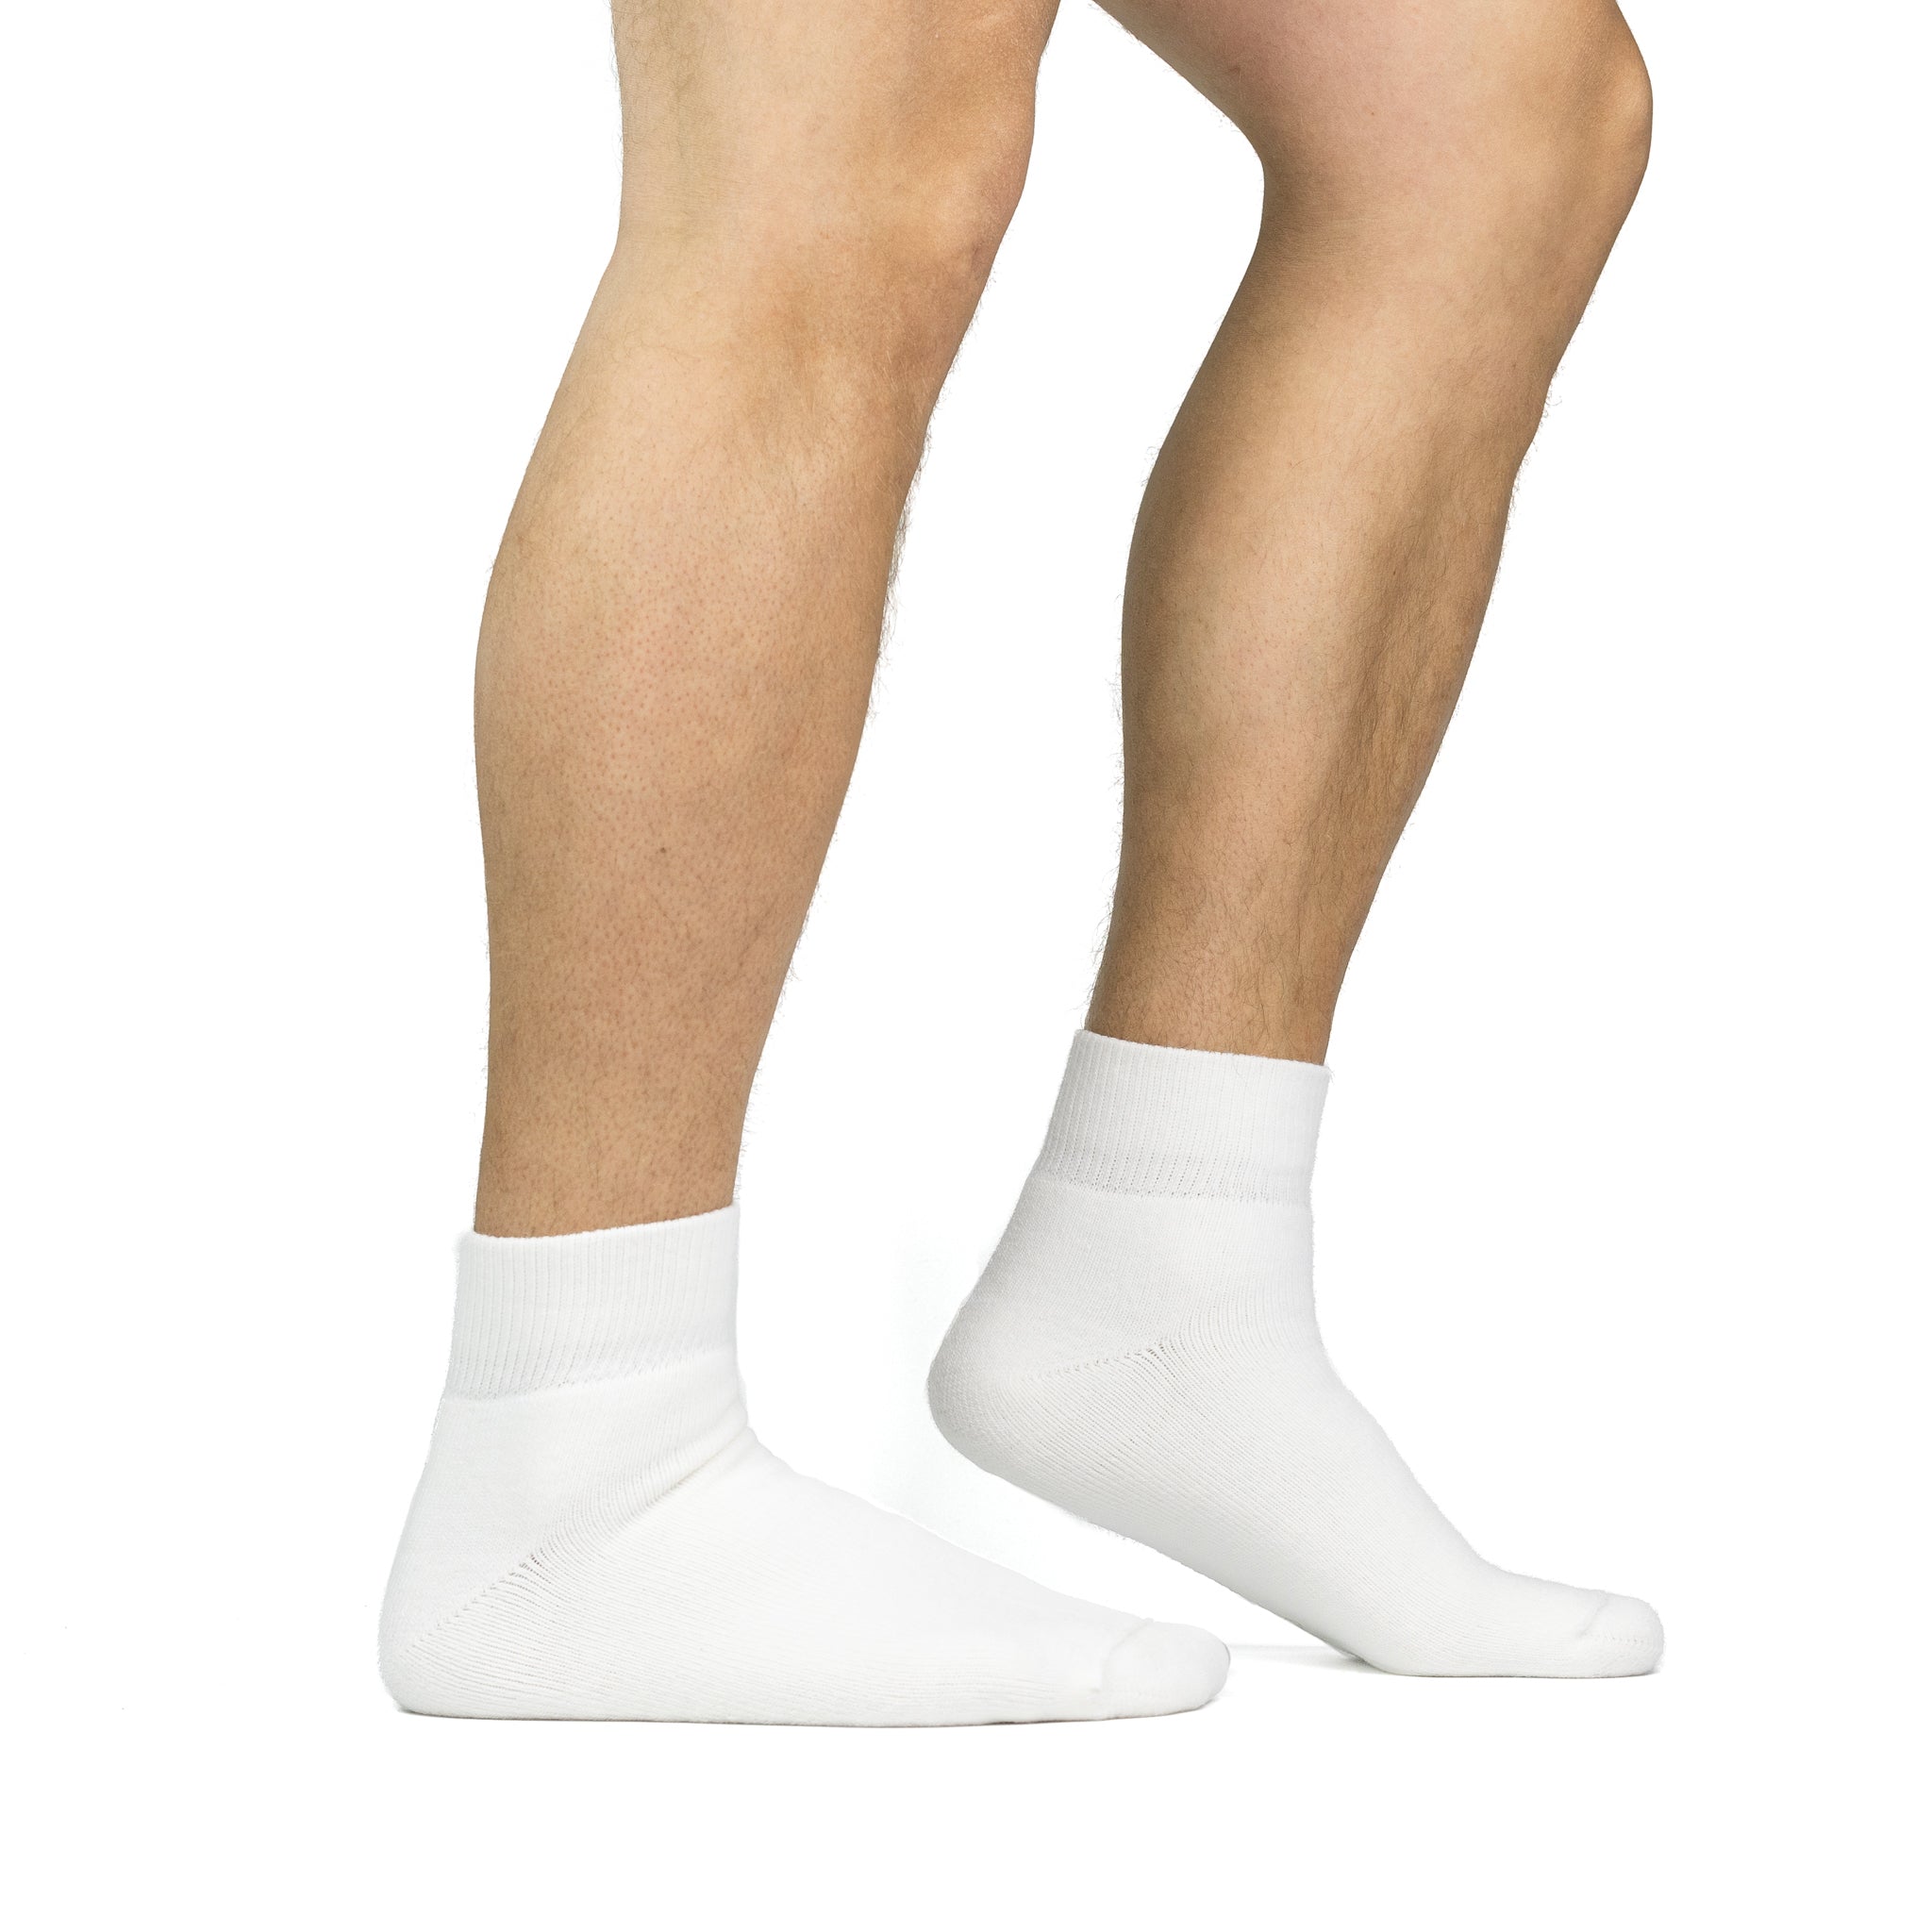 Women's 3 Pack Sensitive Feet Quarter Crew Socks - White